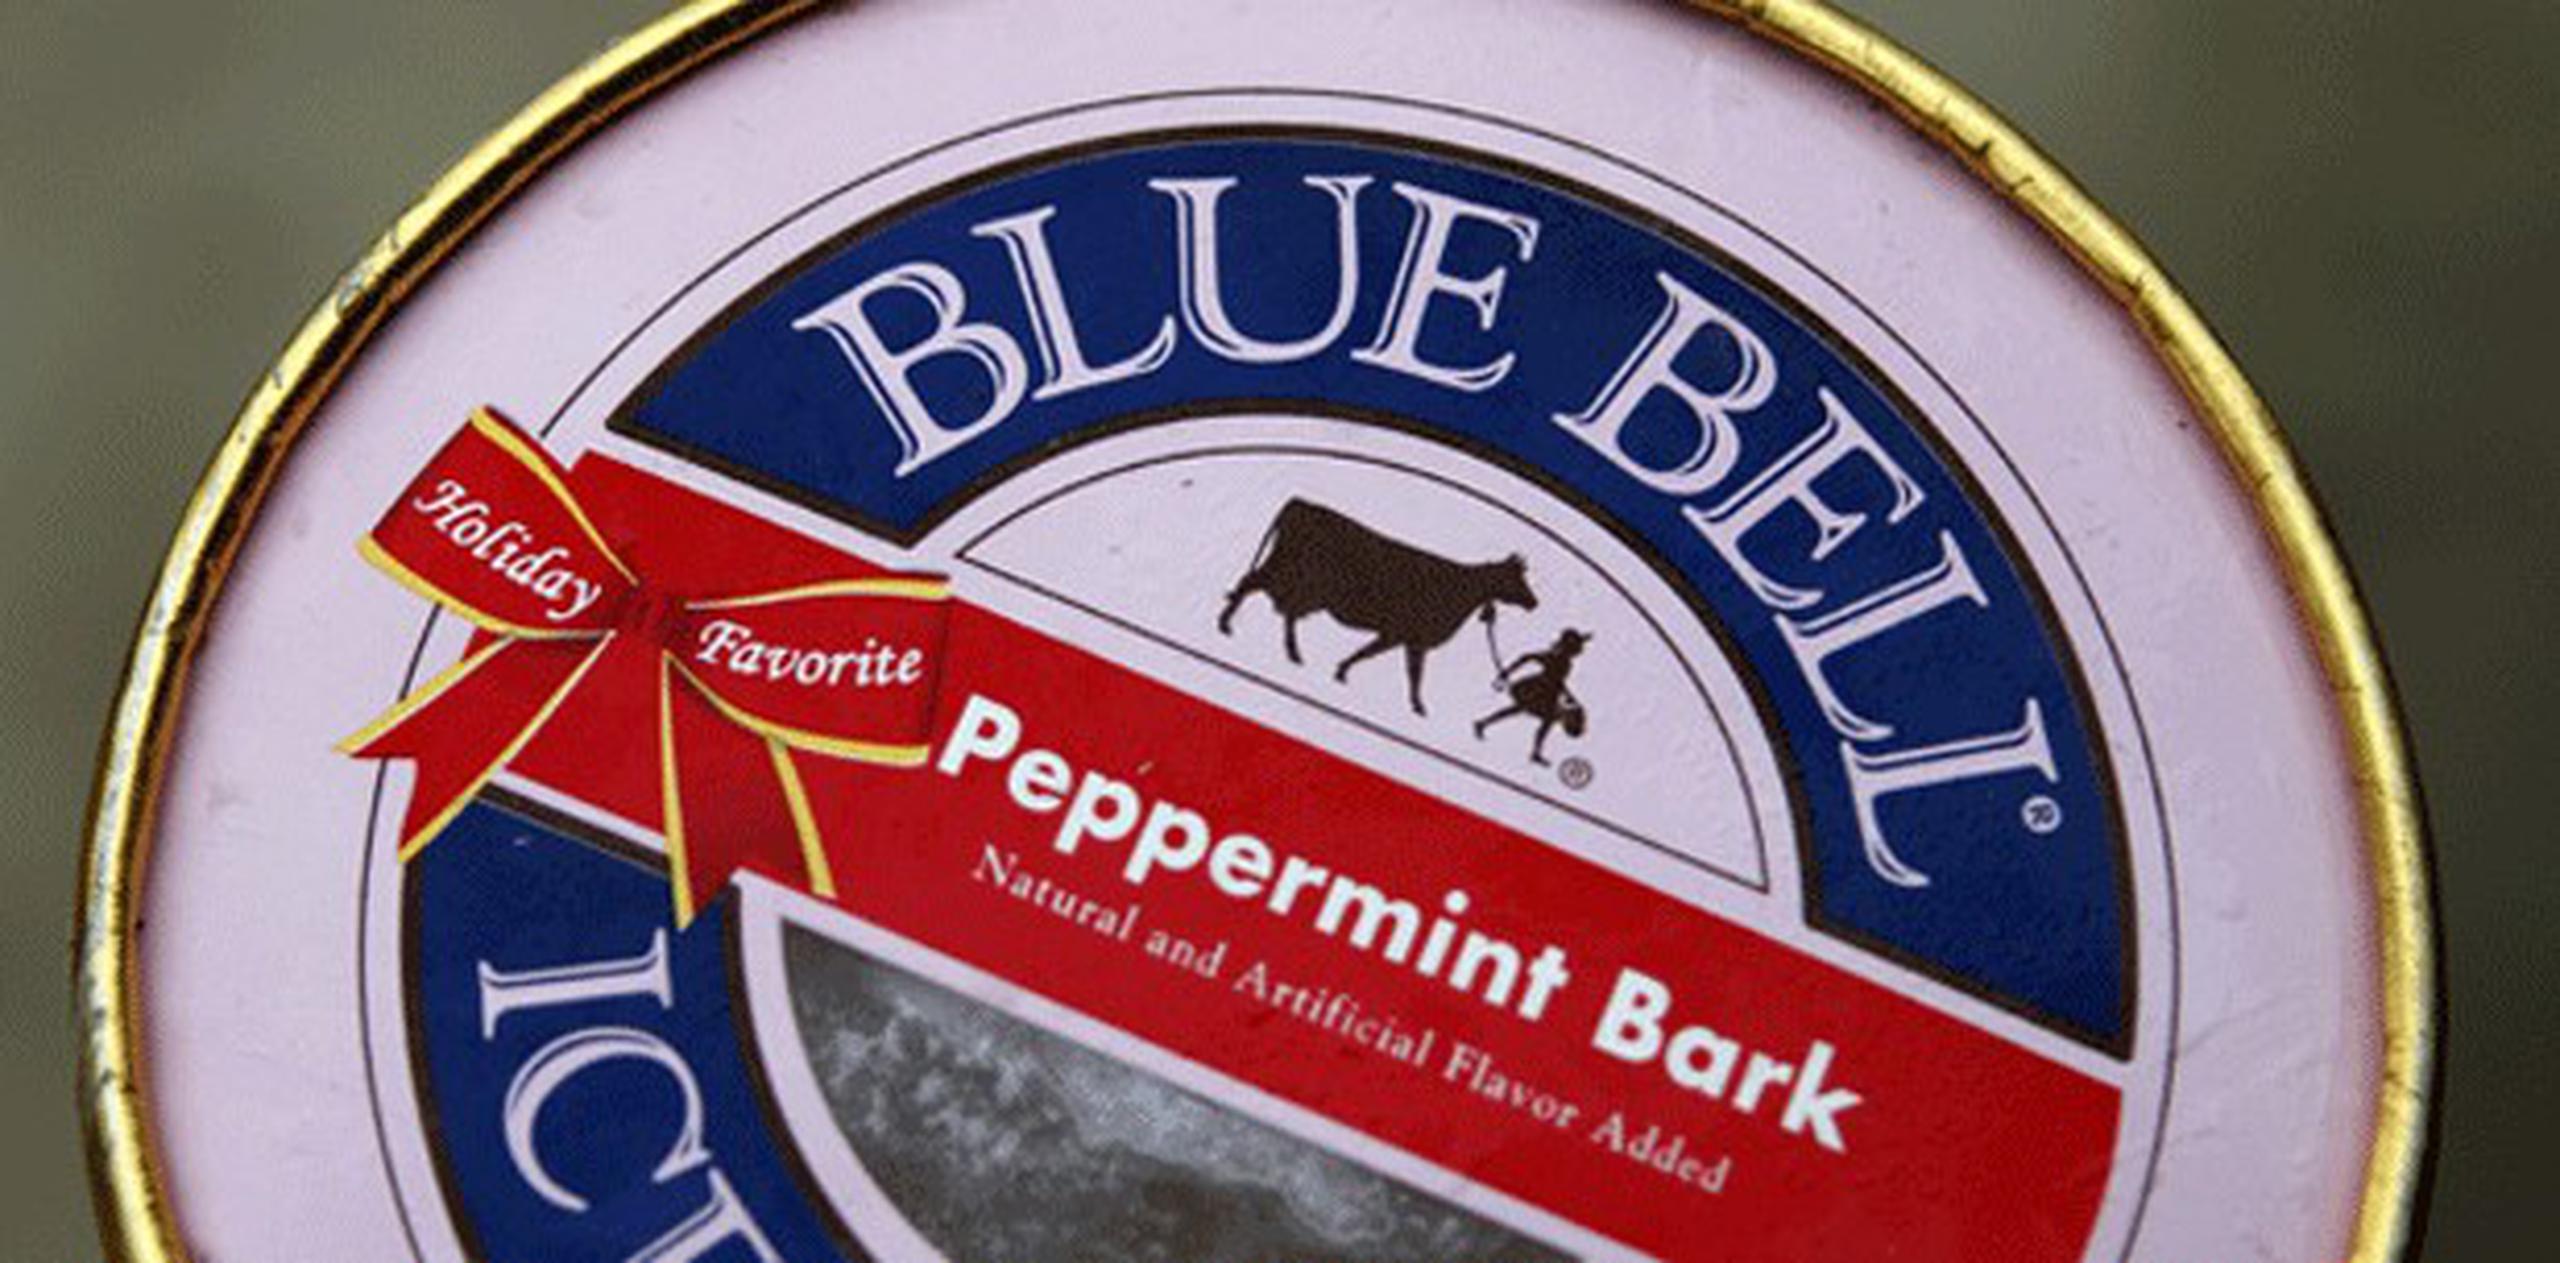 En total, cinco personas contrajeron listeriosis en Kansas después de consumir productos de una línea de producción en la fábrica de productos lácteos de Blue Bell en Brenham, Texas, de acuerdo con un comunicado emitido ayer por la Administración de Alimentos y Medicinas (FDA). (AP)